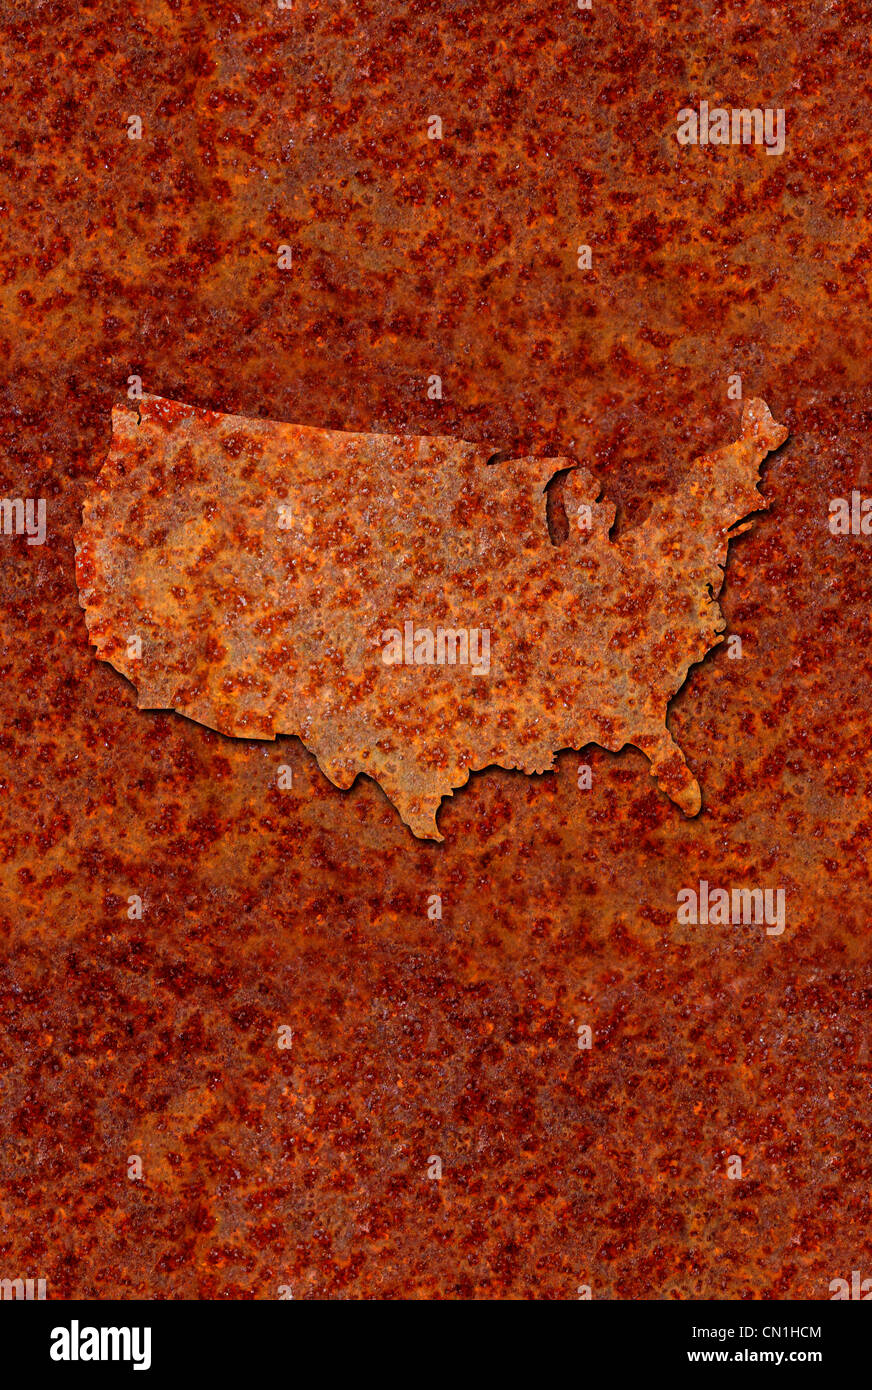 Métal corrodé rouillé carte des États-Unis, de couleur orange rougeâtre. Banque D'Images